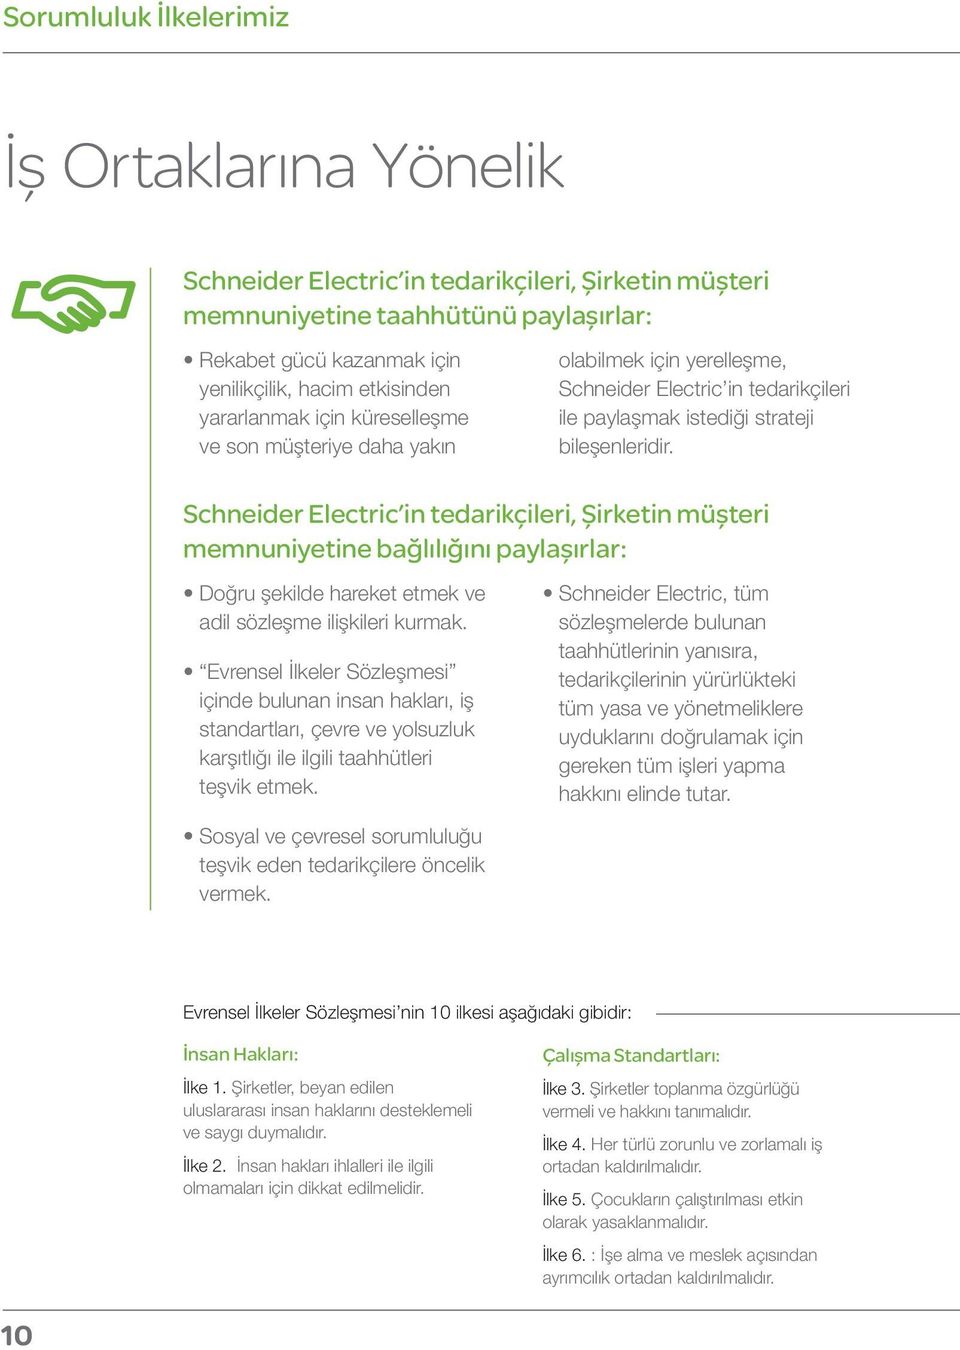 Schneider Electric in tedarikçileri, Şirketin müşteri memnuniyetine bağlılığını paylaşırlar: Doğru şekilde hareket etmek ve adil sözleşme ilişkileri kurmak.